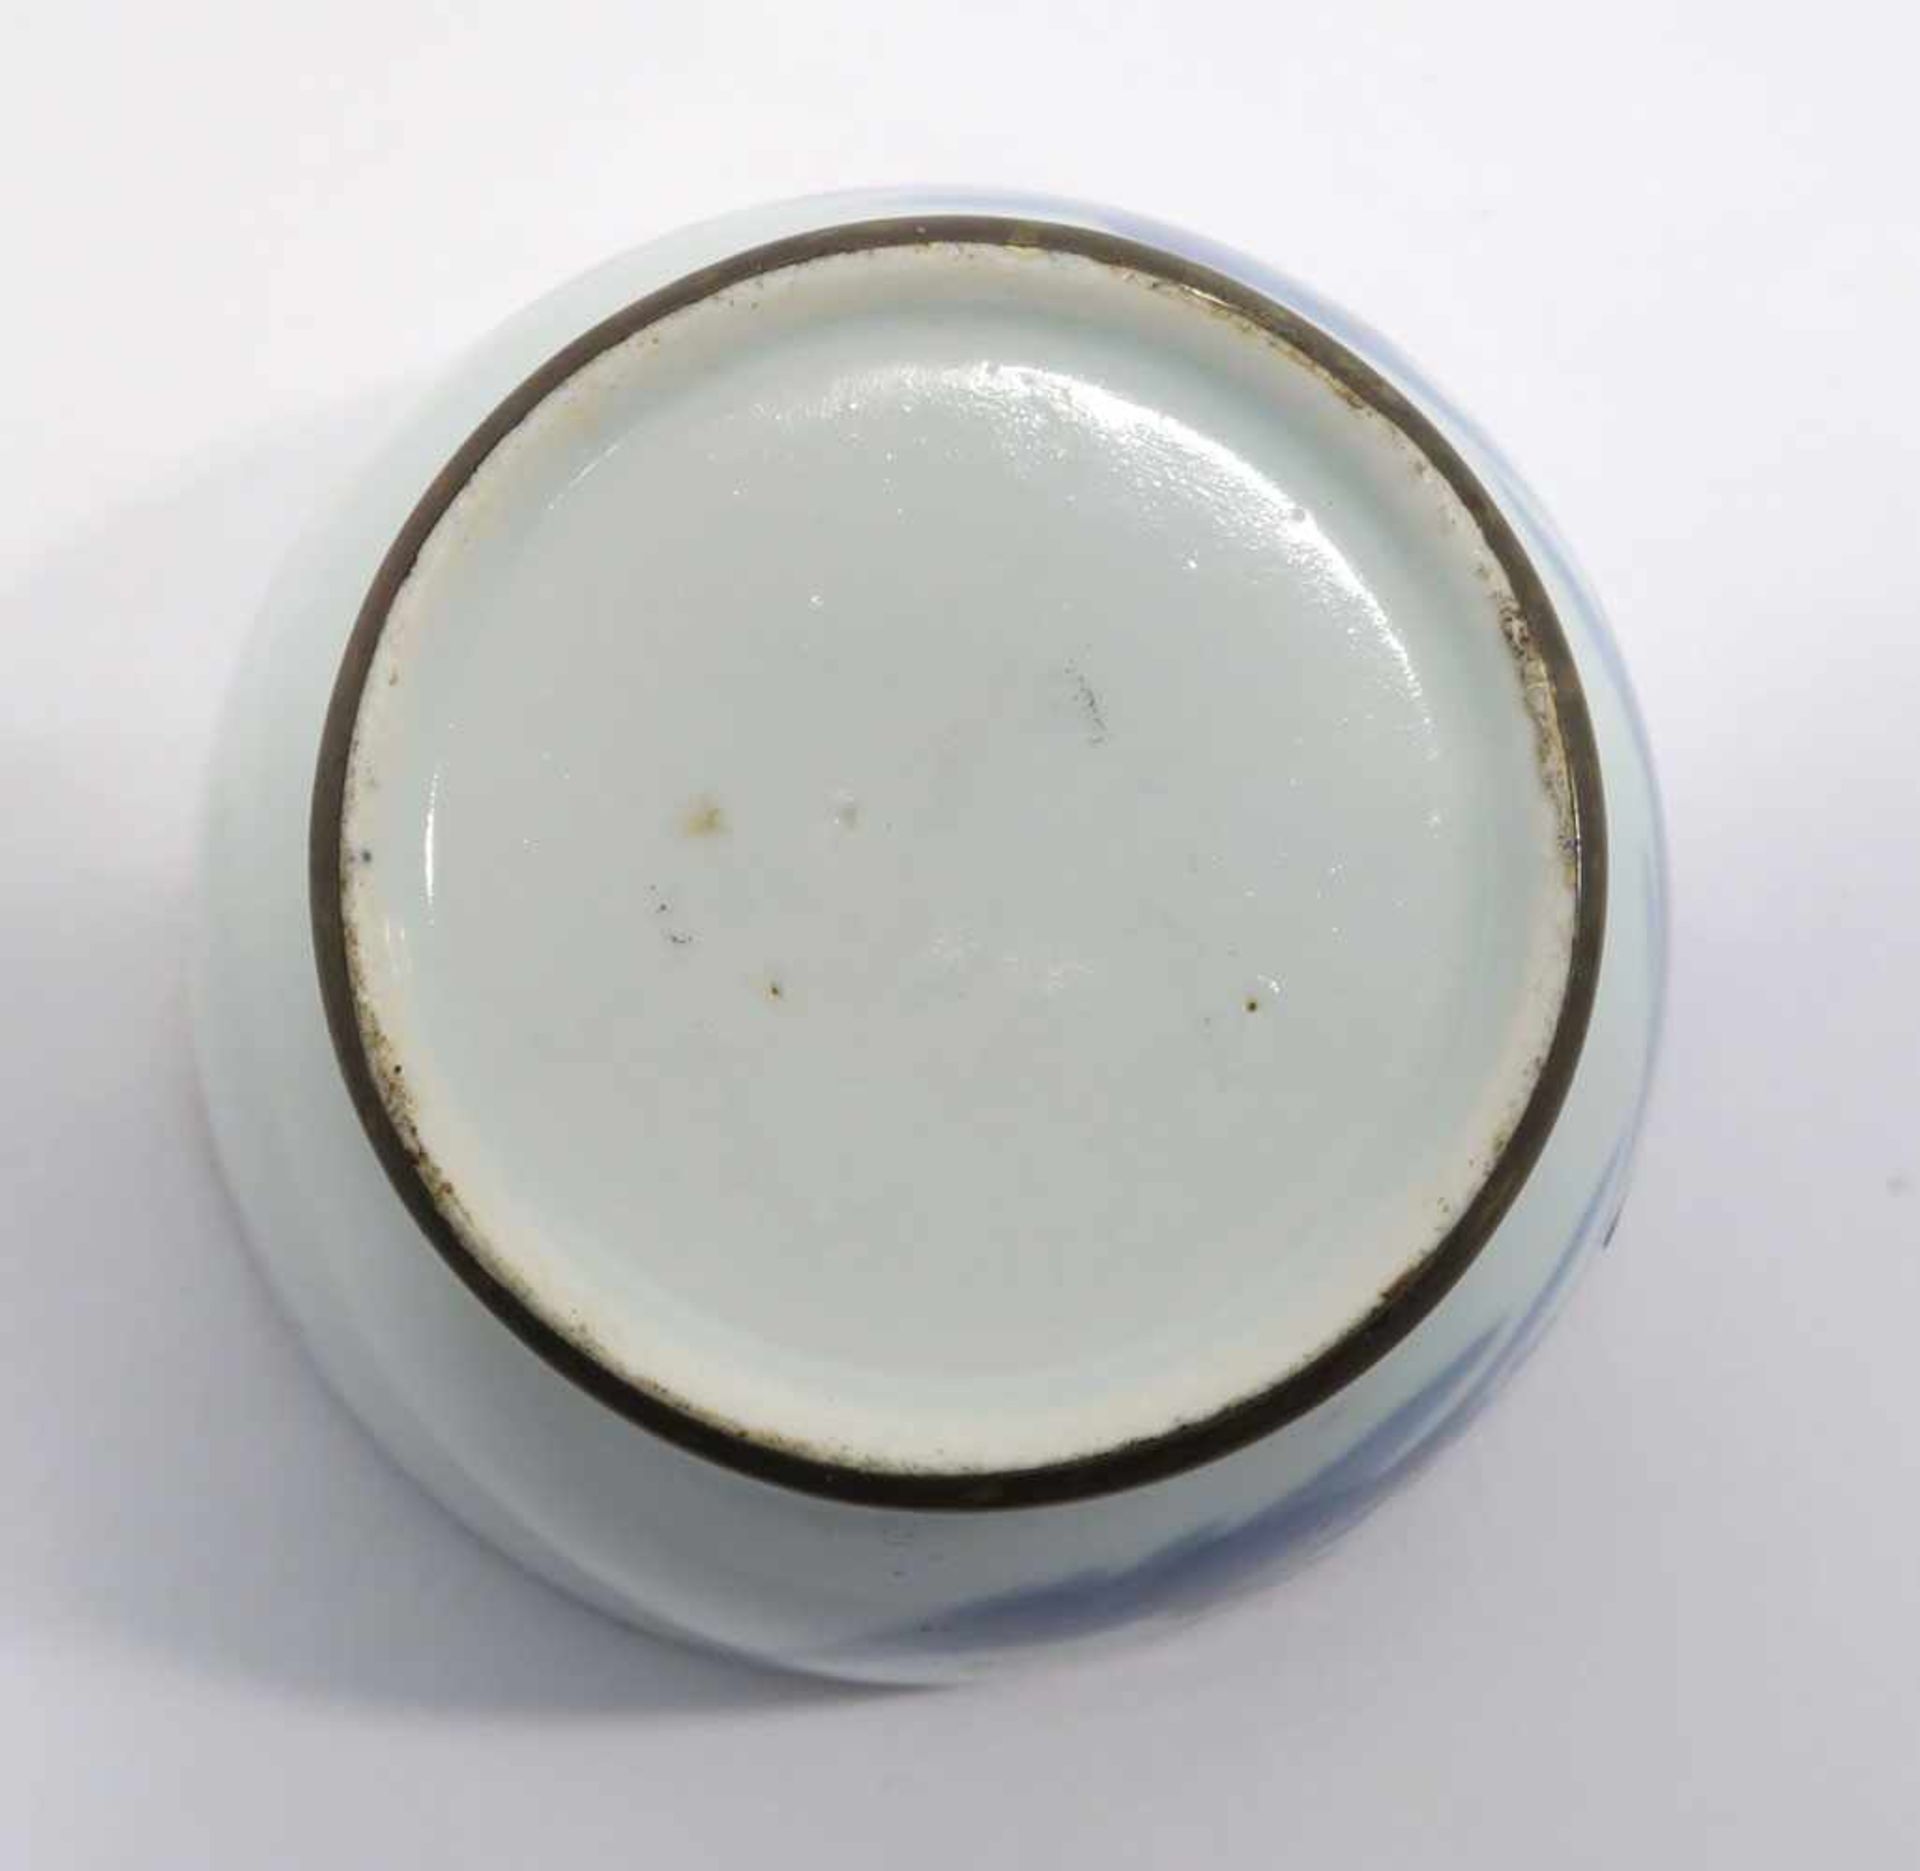 Opiumpfeife / Vase / DeckelgefäßChina. Porzellan, tlw. mit Kupfermontierung. Verschiedene bunte bzw. - Bild 2 aus 21